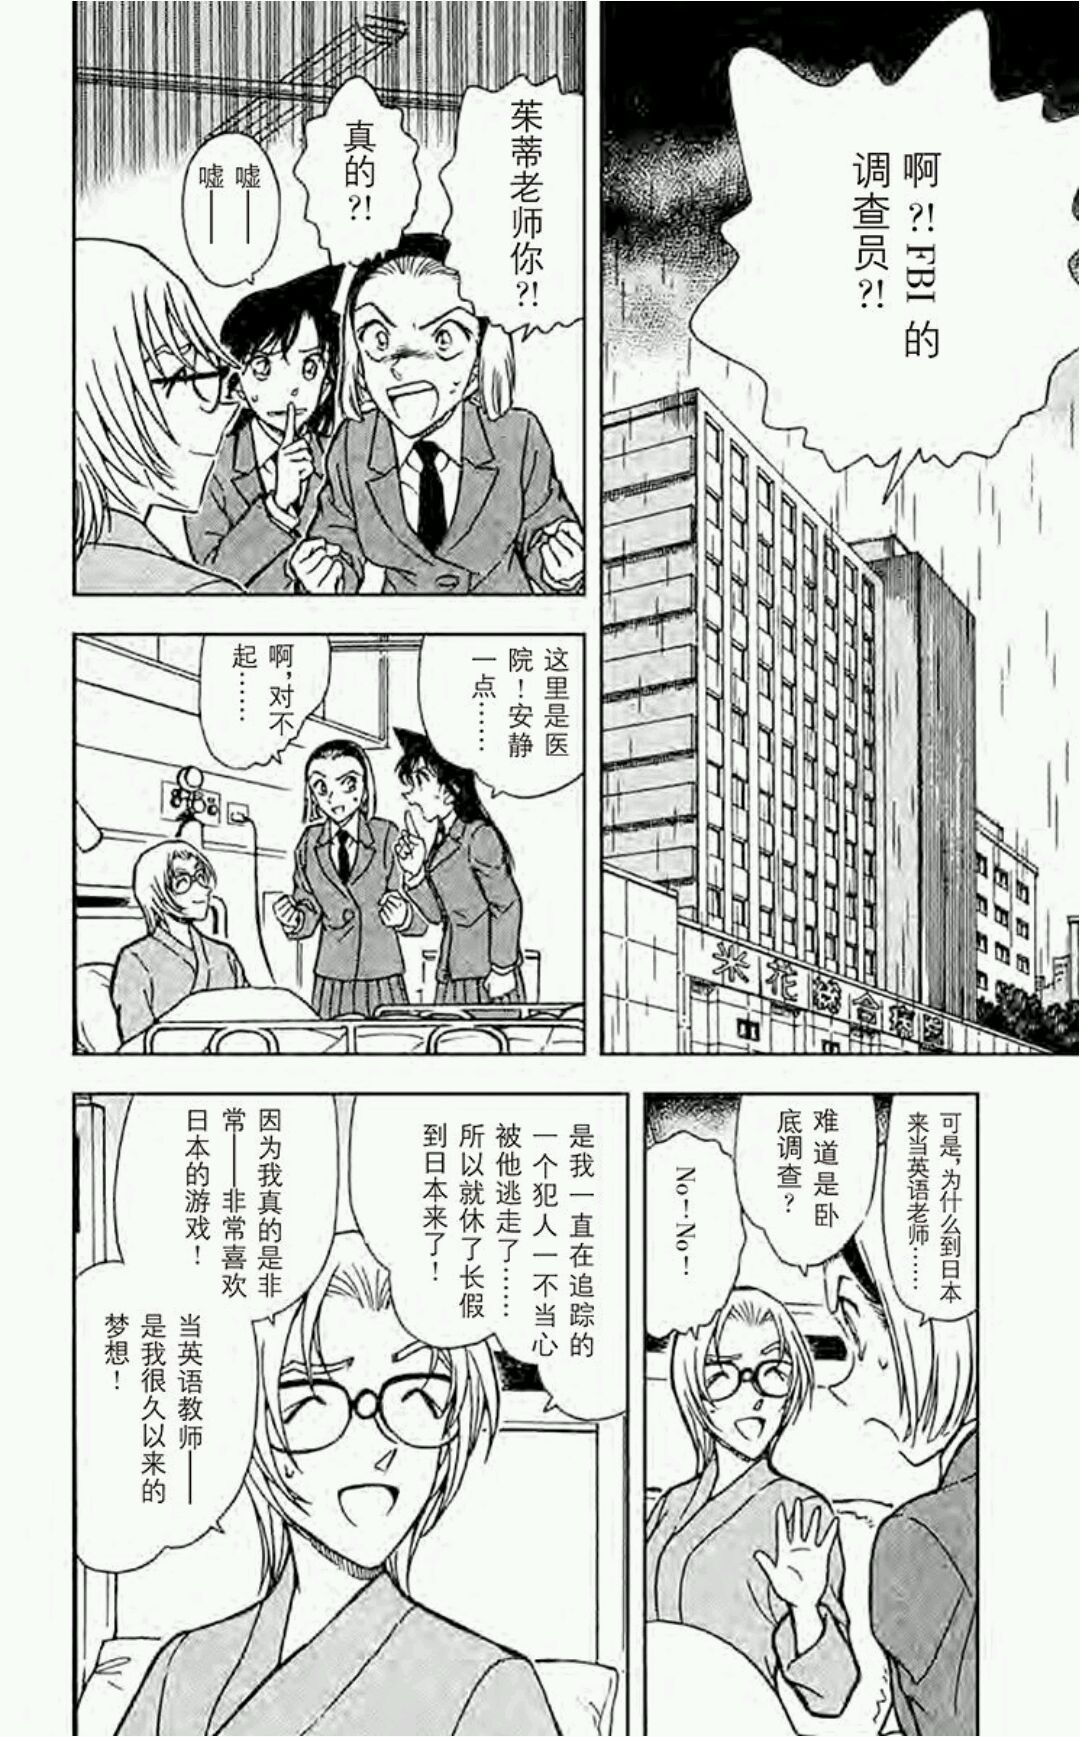 『青山刚昌』原作漫画《名侦探柯南》第435～437话 寻找屁股上的印记